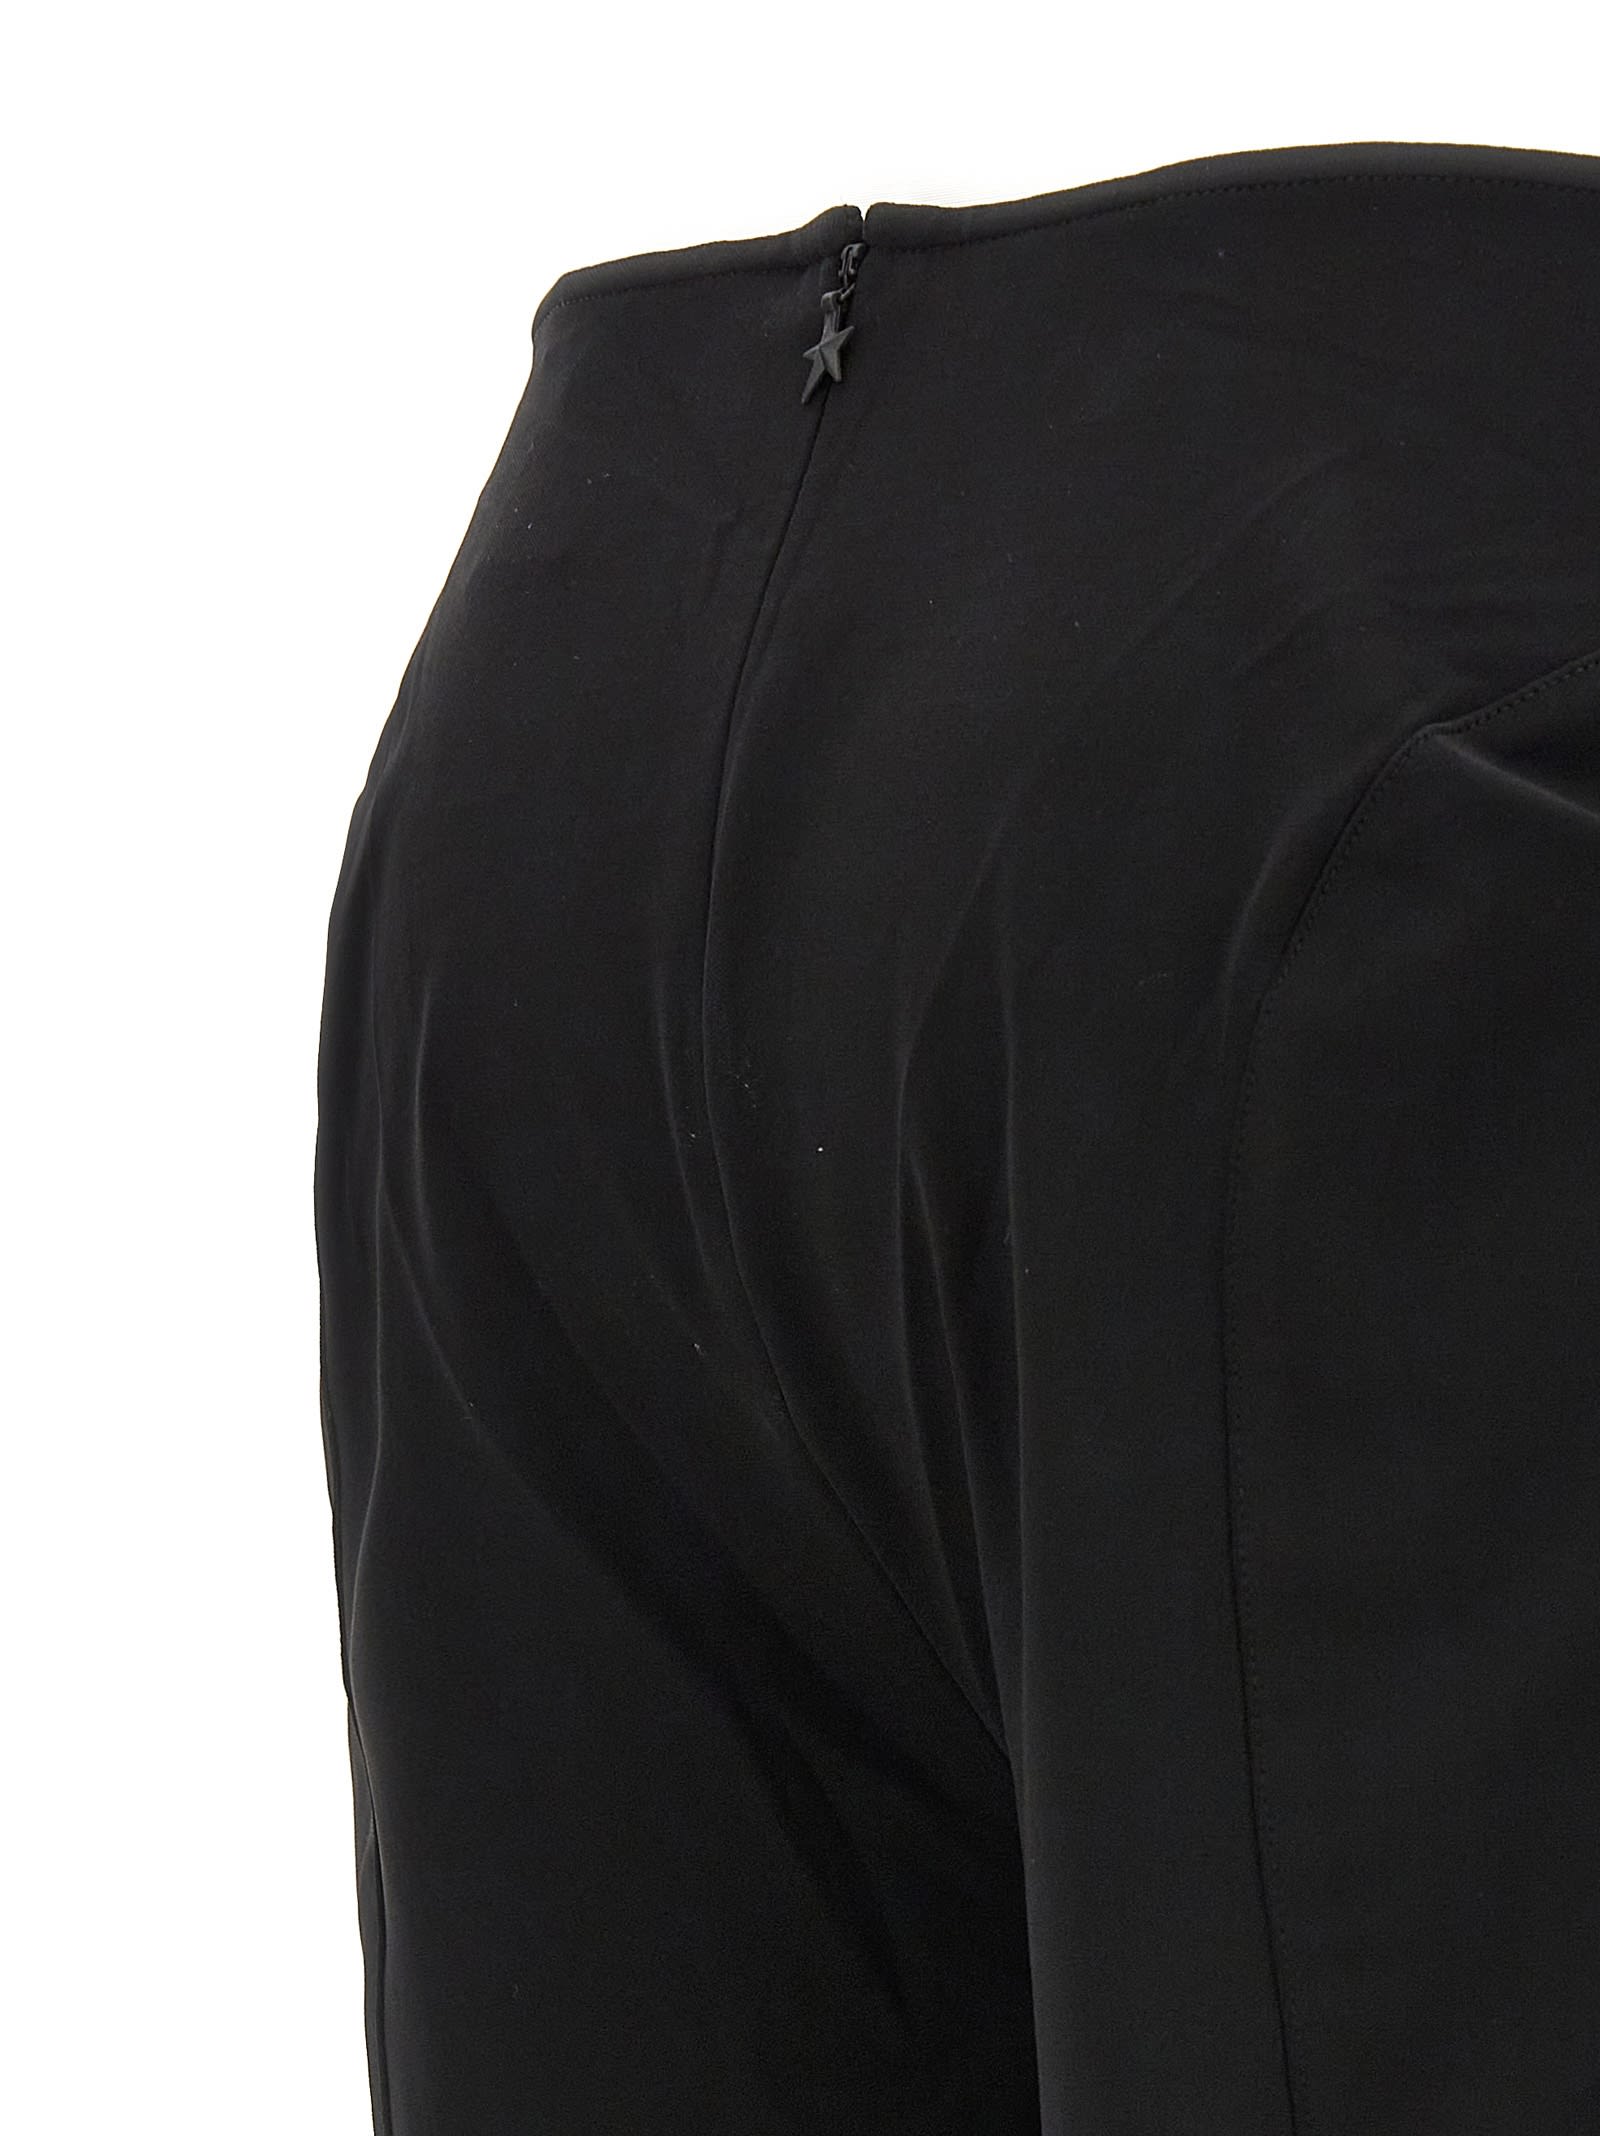 Shop Mugler M Cut-out Trousers In Black